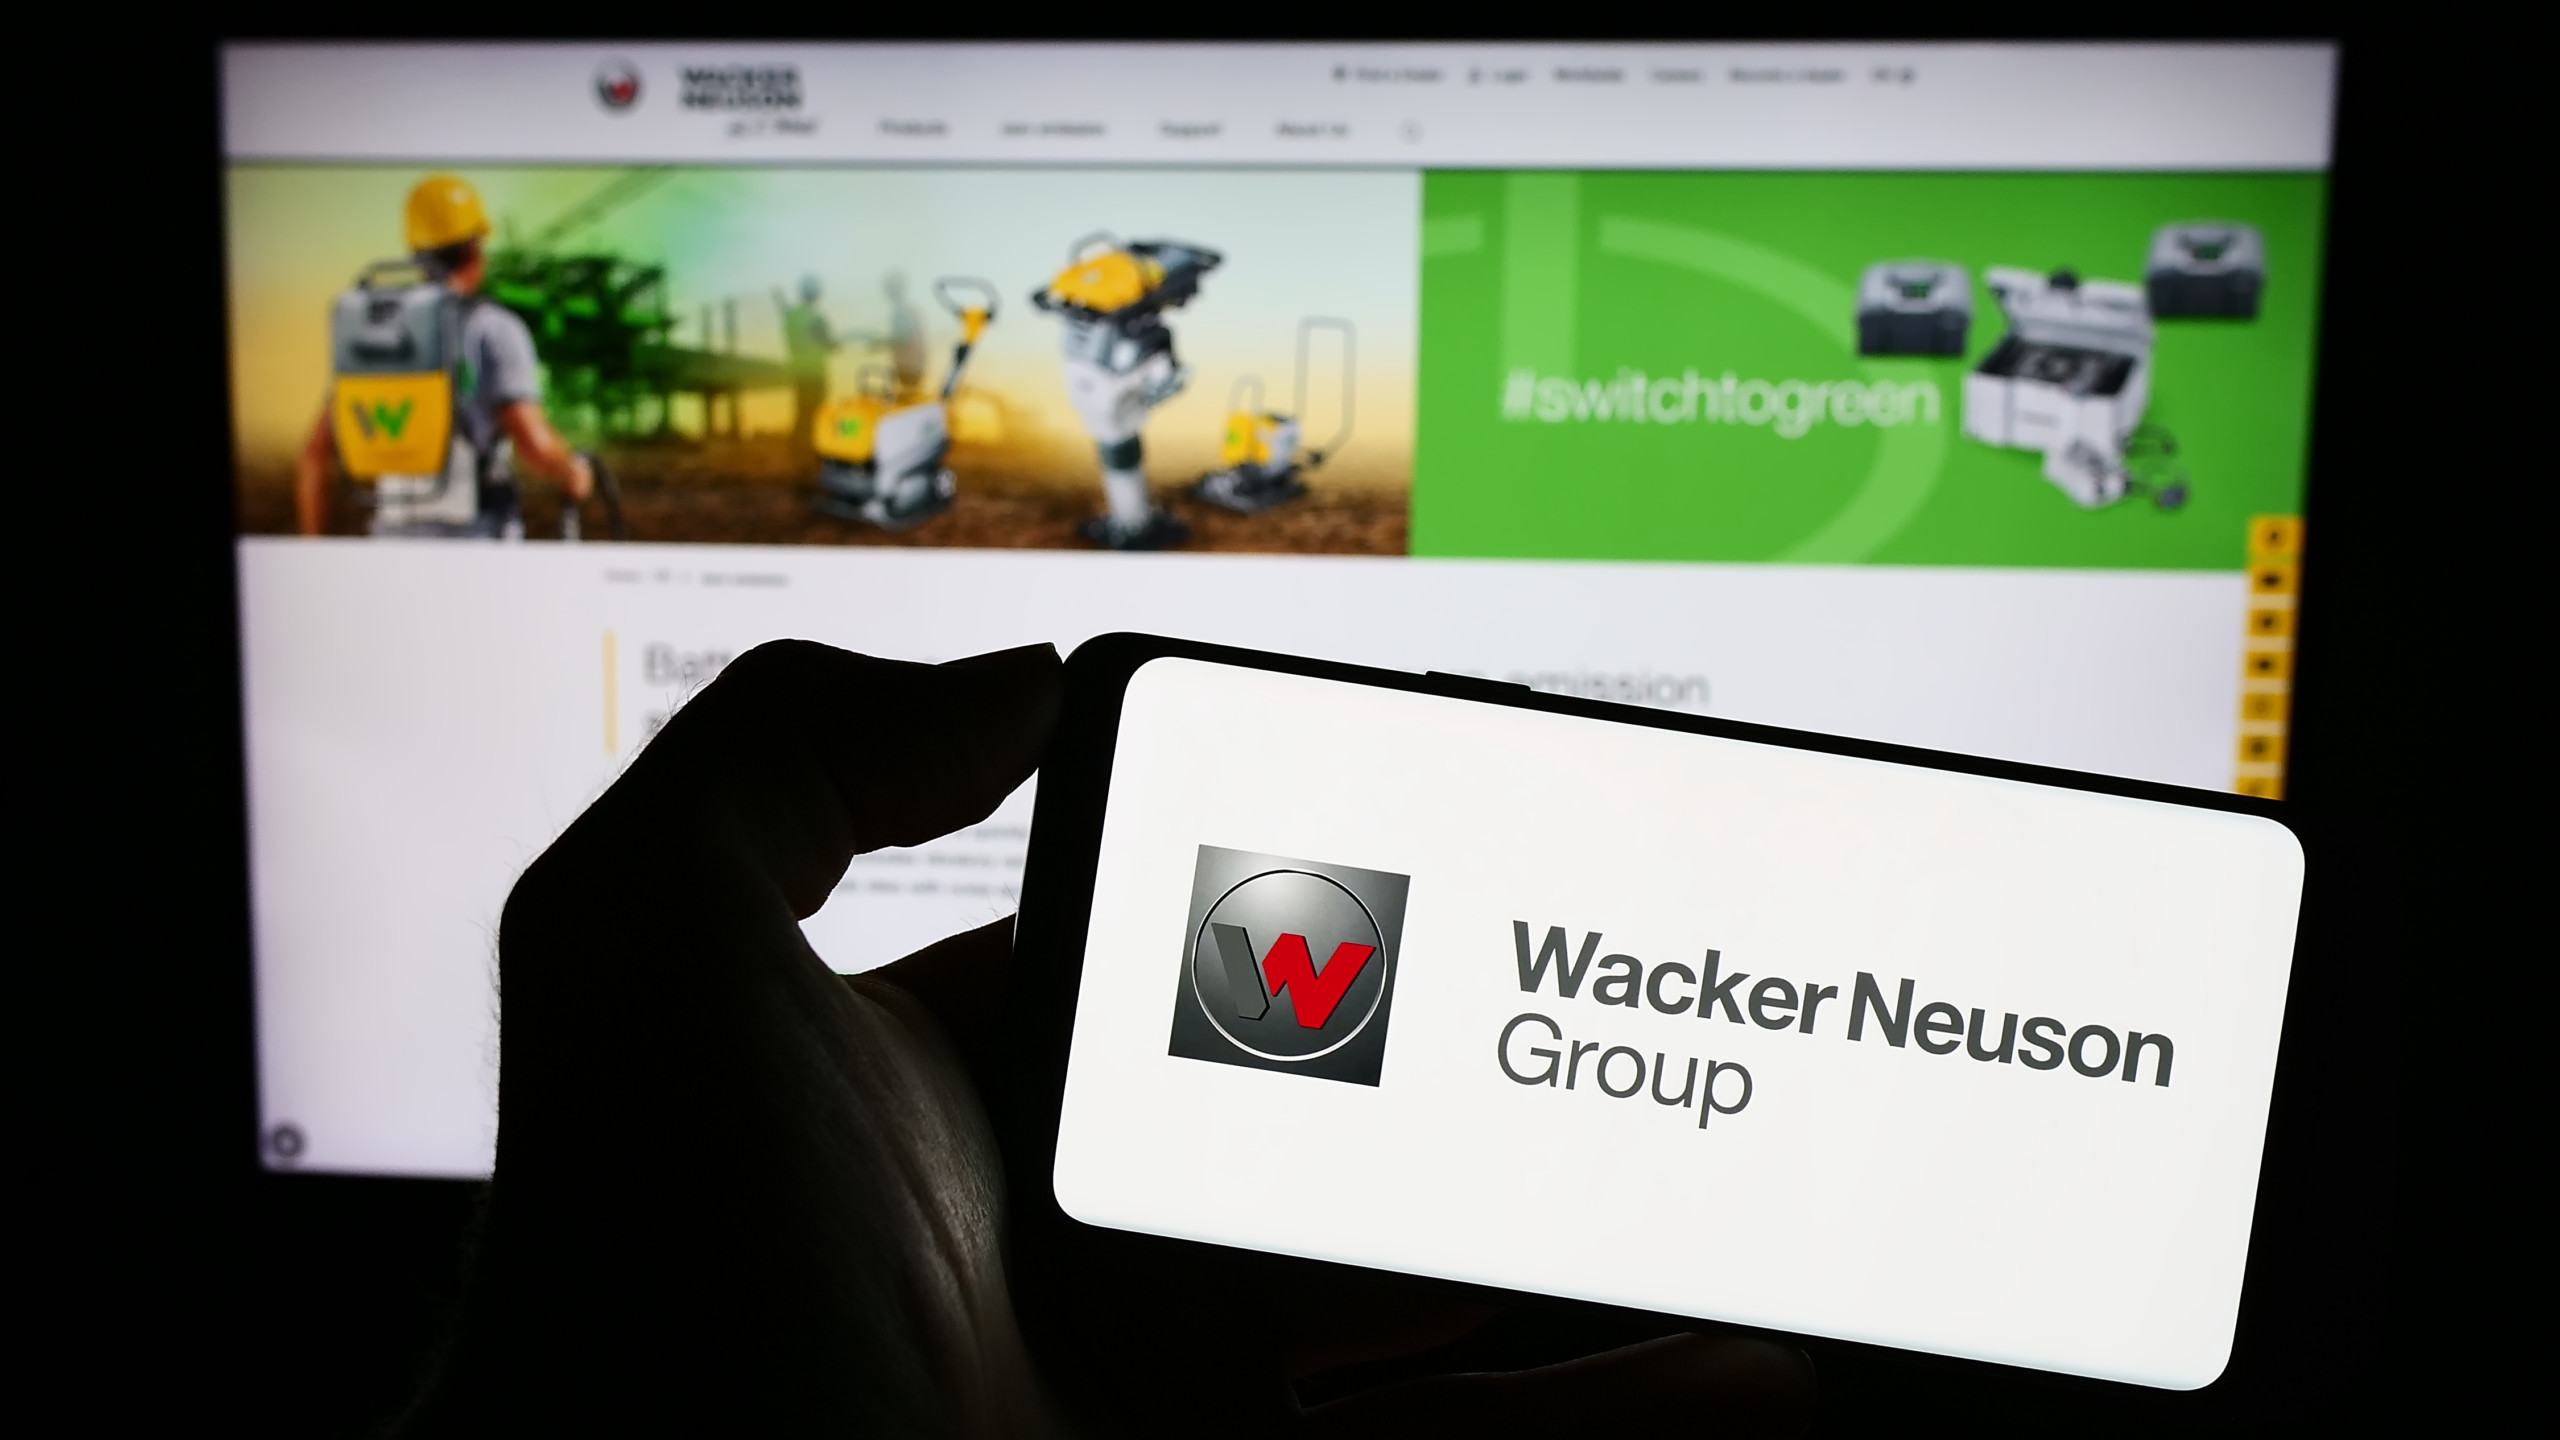 Nebenwerte Depotblog: Wacker Neuson profitiert von der wachsenden Nachfrage nach tragbaren Stromgeneratoren aufgrund steigender Stromnetzausfälle!